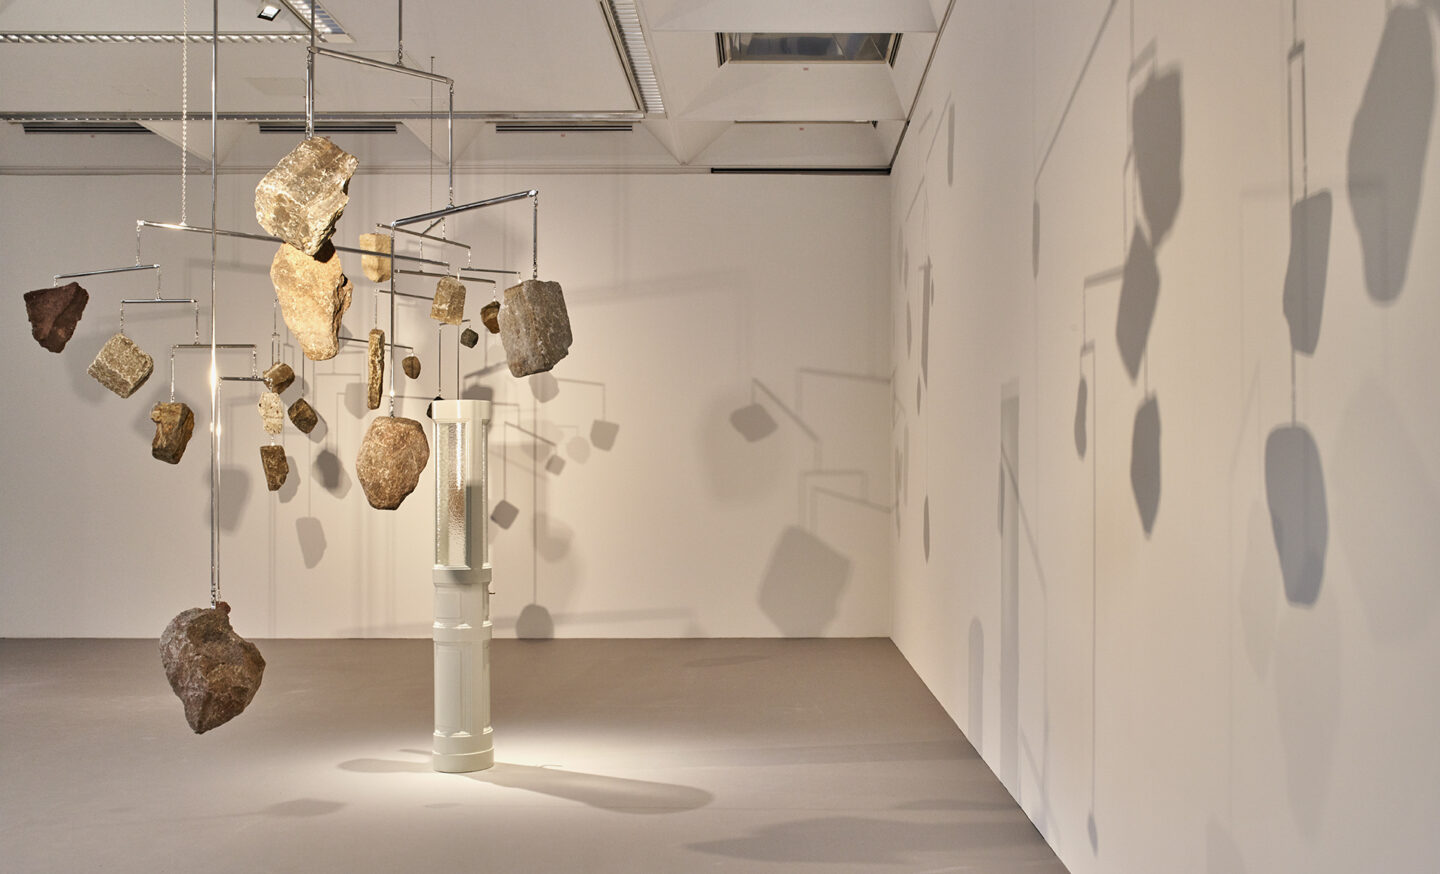 Alicja Kwade, Superheavy Skies, 2022, Lehmbruck-Museum, Mobiles mit Felsbrocken die fein ausbalanciert an der Decke des Museums hängen.